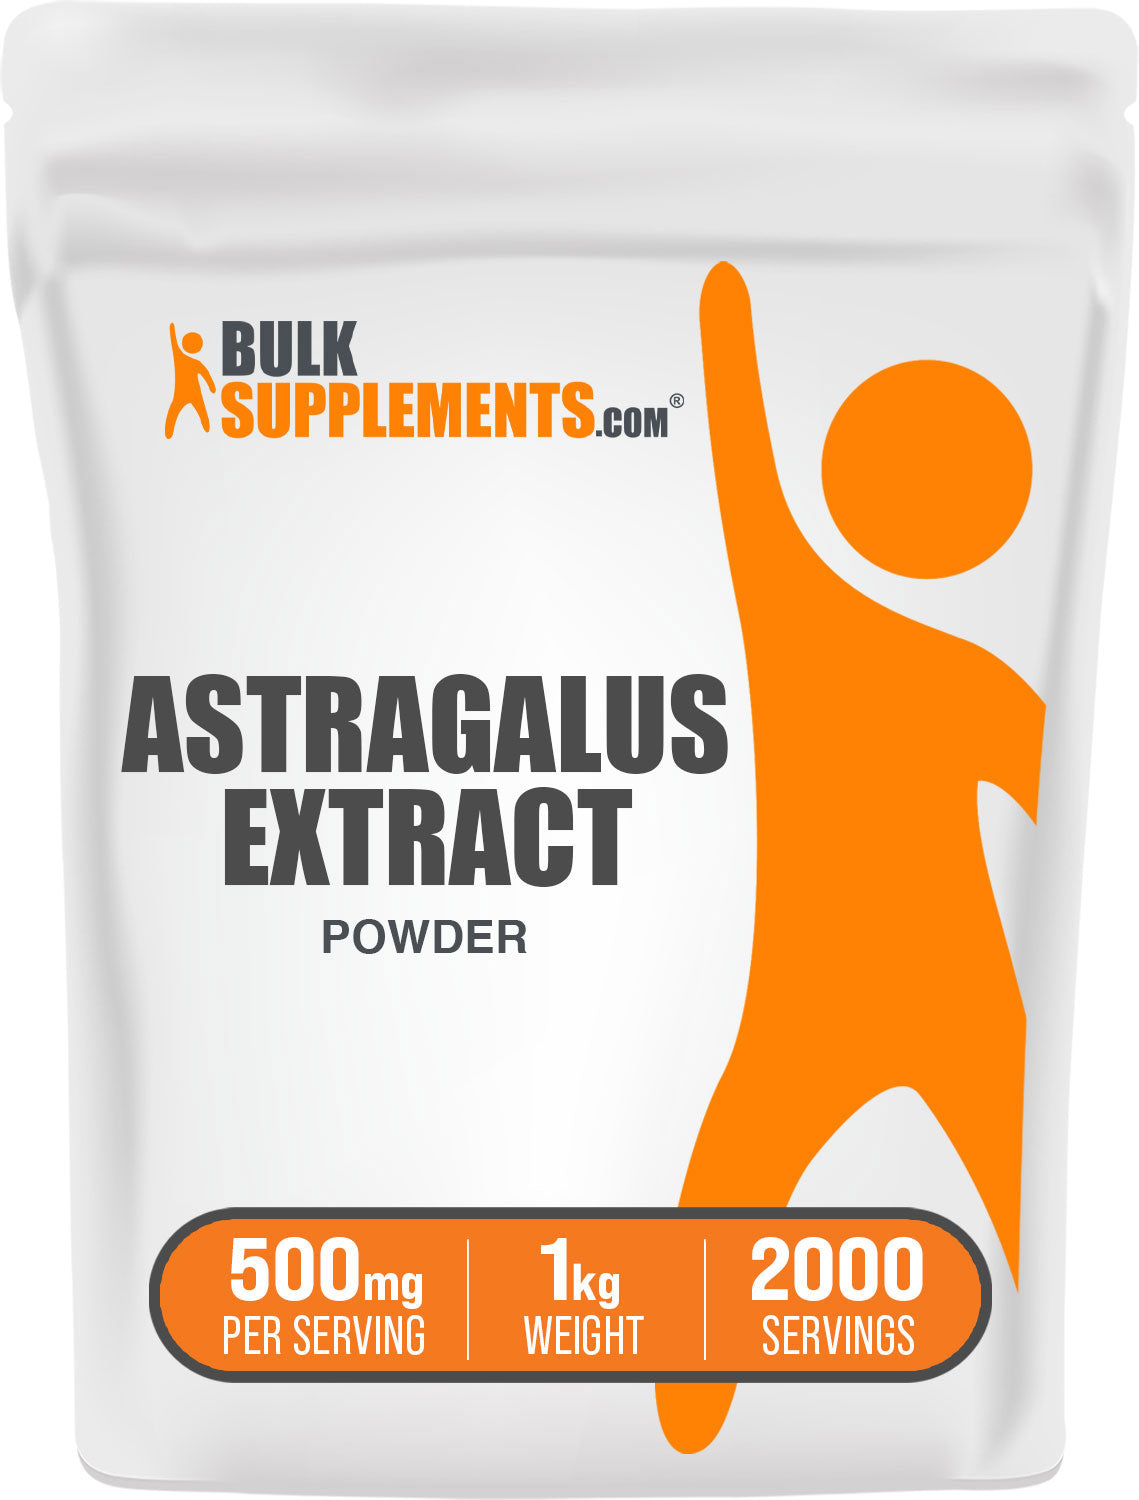 BulkSupplements.com Astragalus Extract Powder 1kg bag